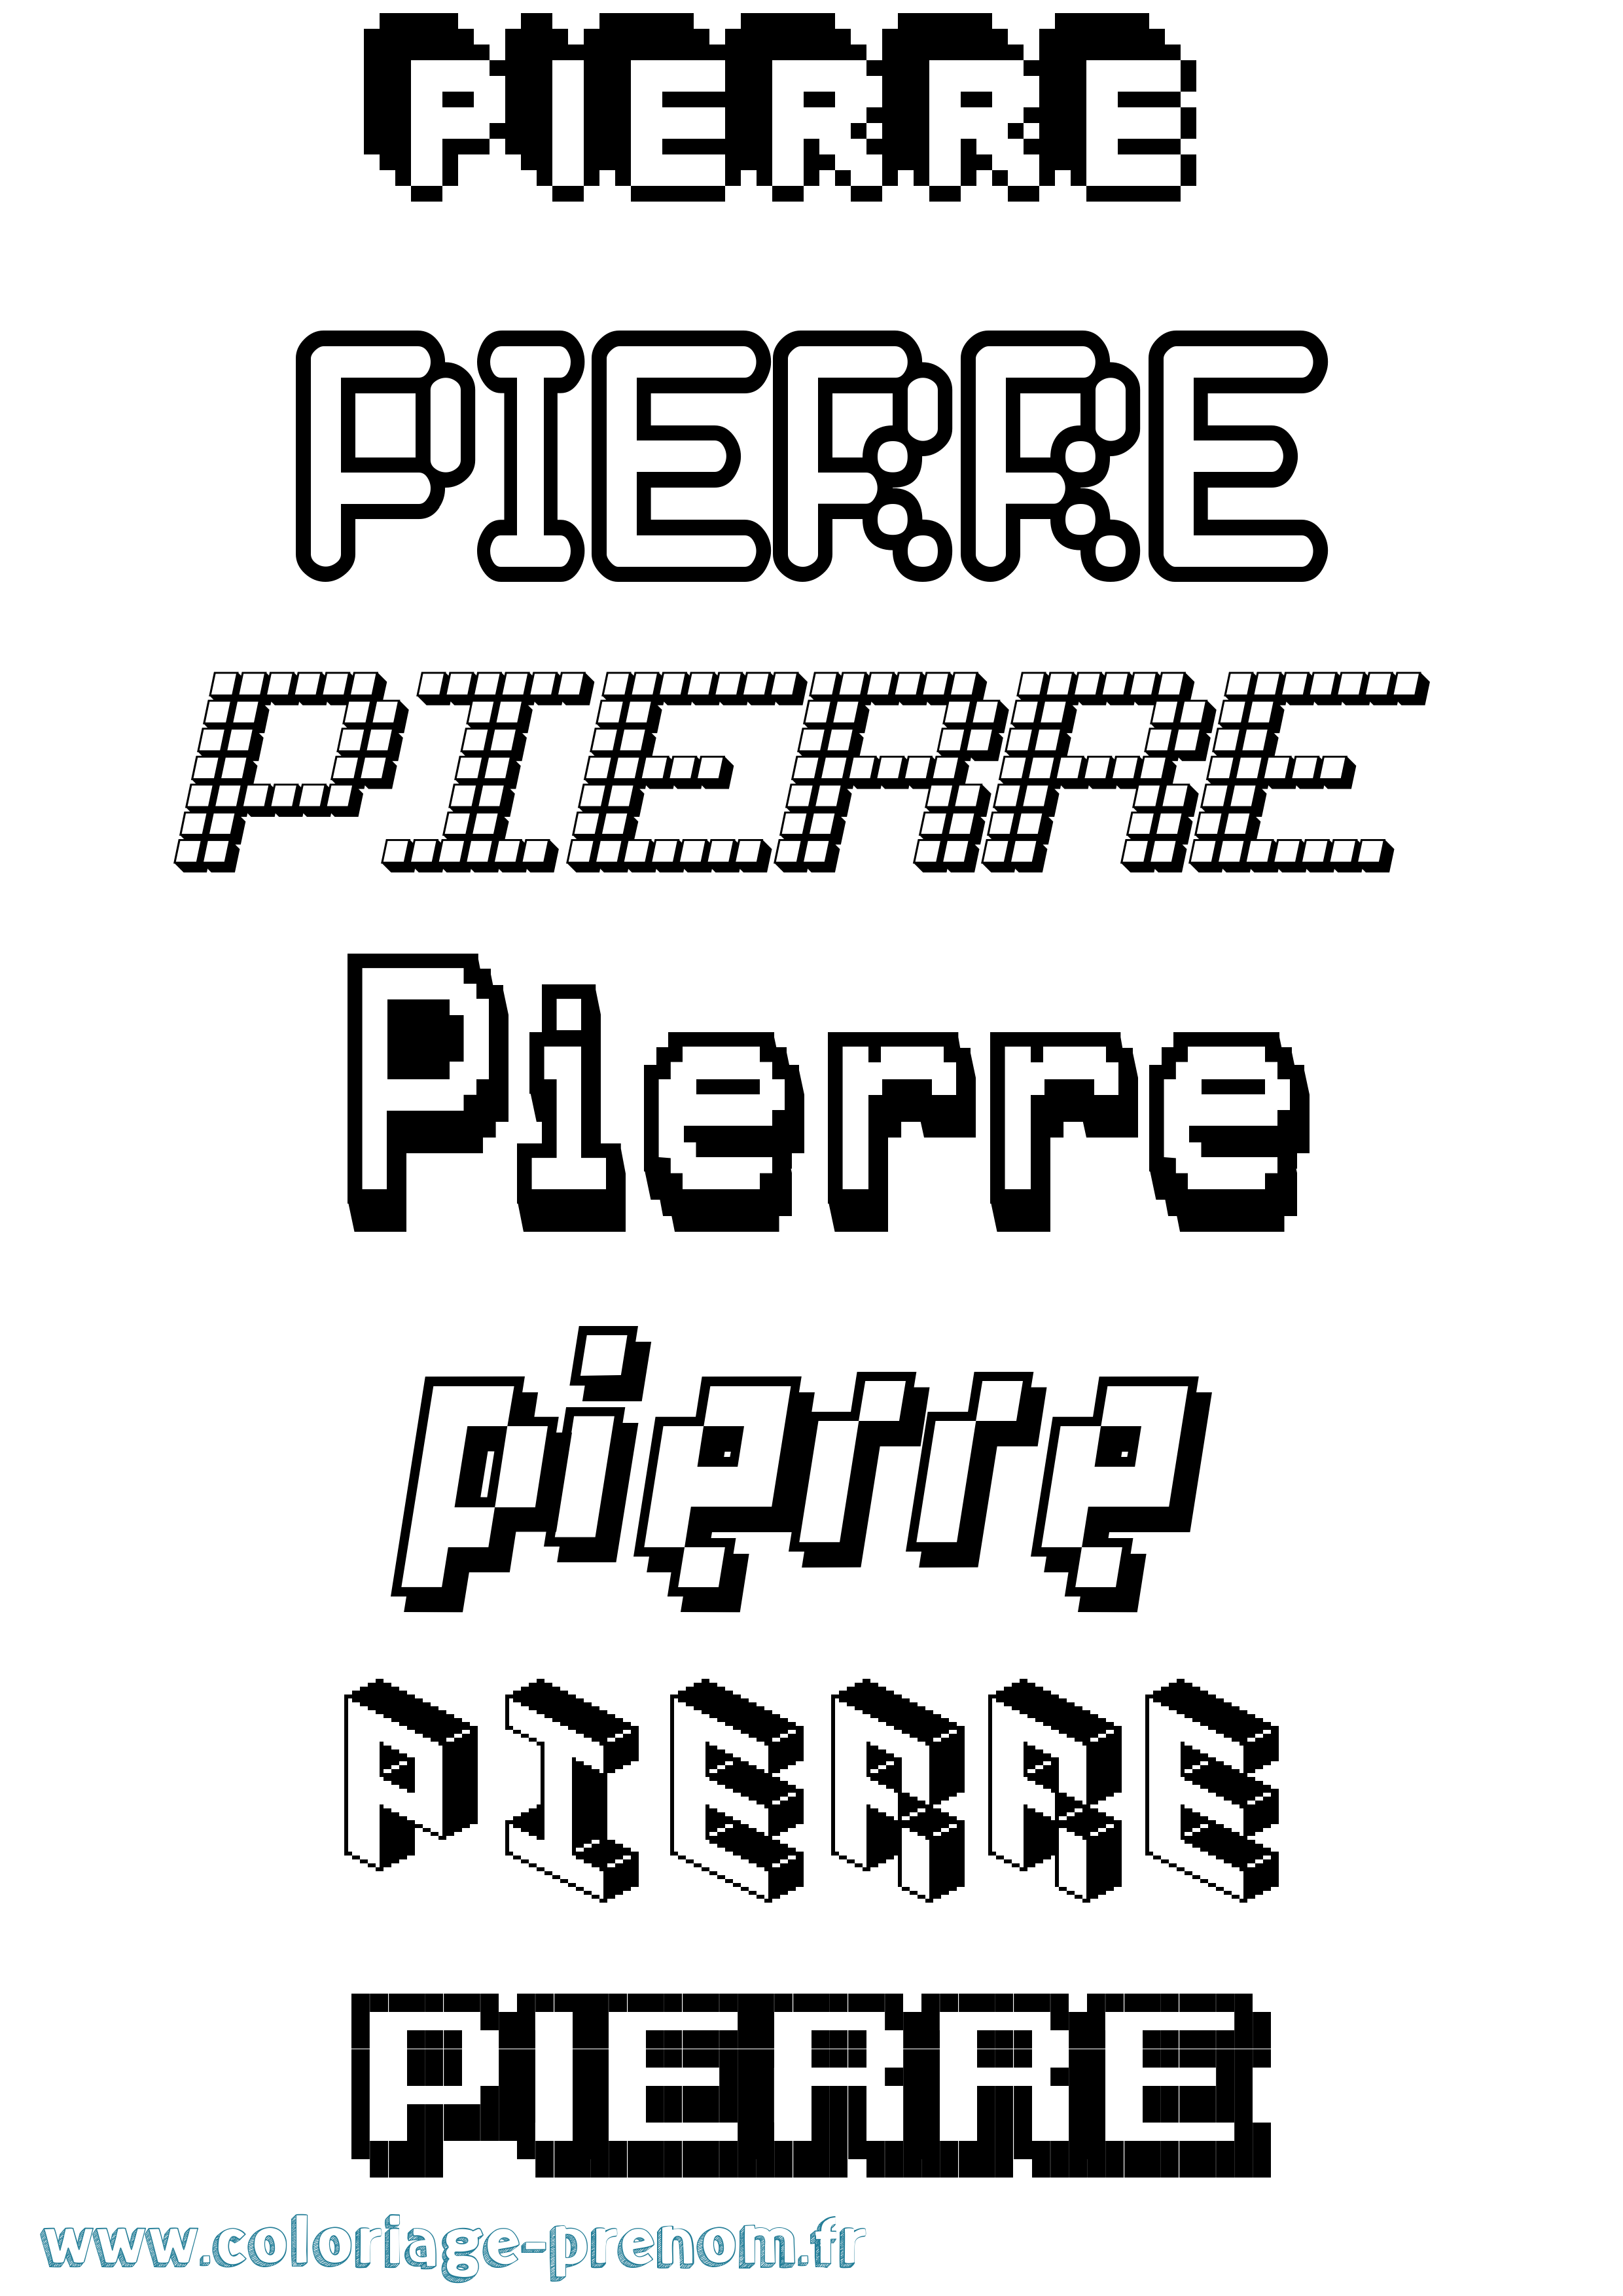 Coloriage prénom Pierre Pixel